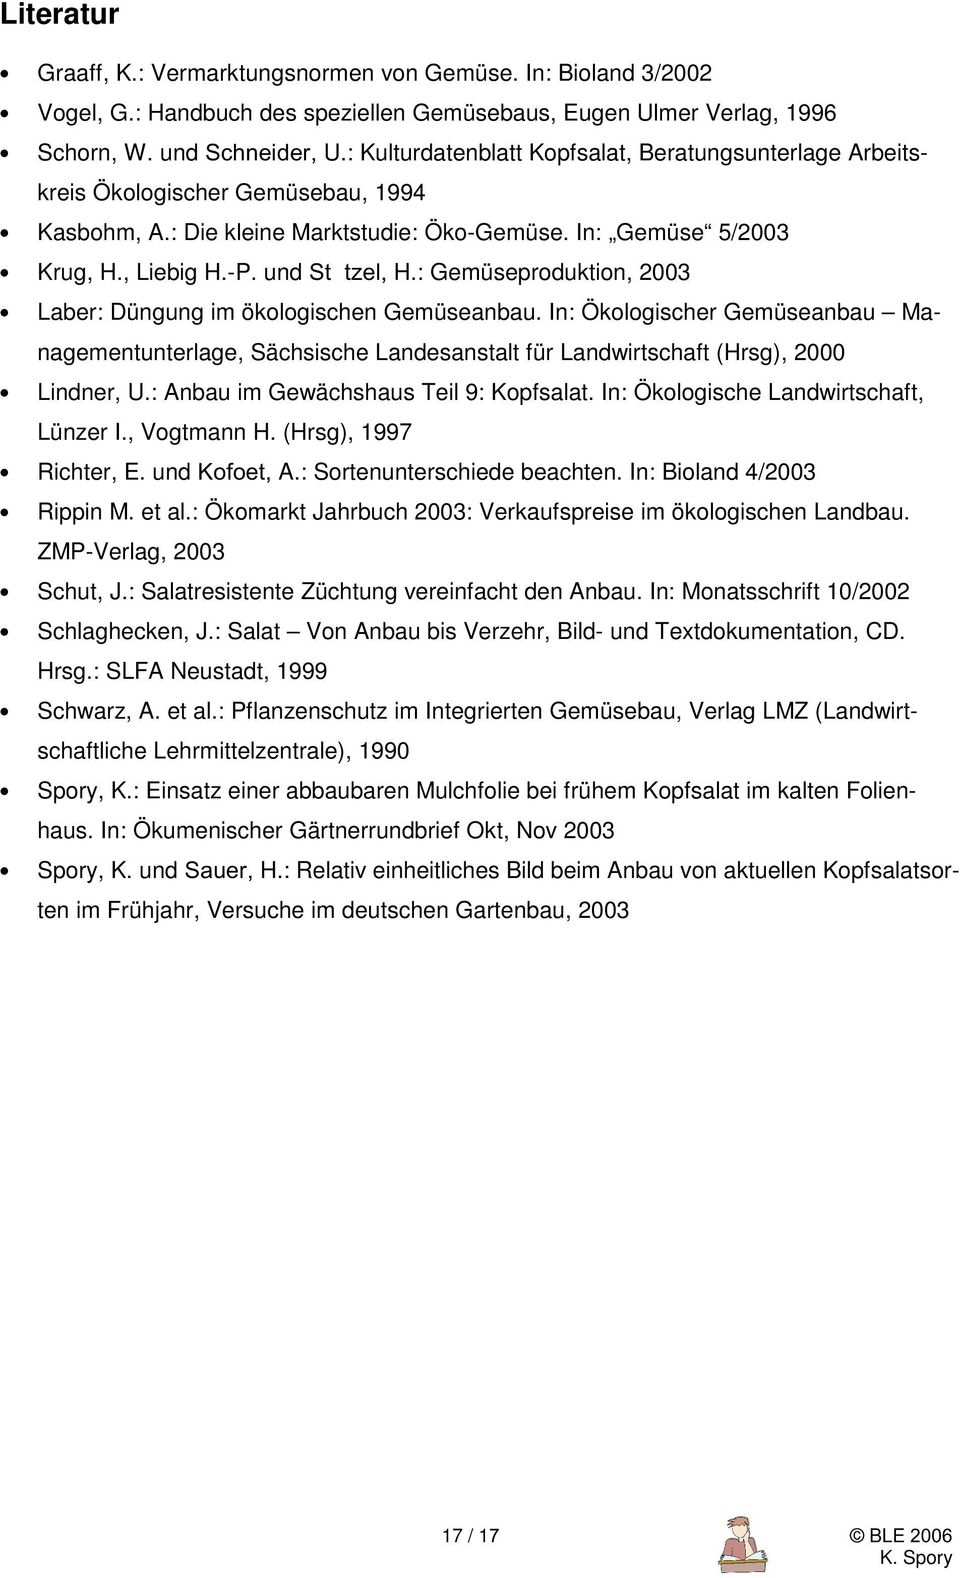 : Gemüseproduktion, 2003 Laber: Düngung im ökologischen Gemüseanbau. In: Ökologischer Gemüseanbau Managementunterlage, Sächsische Landesanstalt für Landwirtschaft (Hrsg), 2000 Lindner, U.